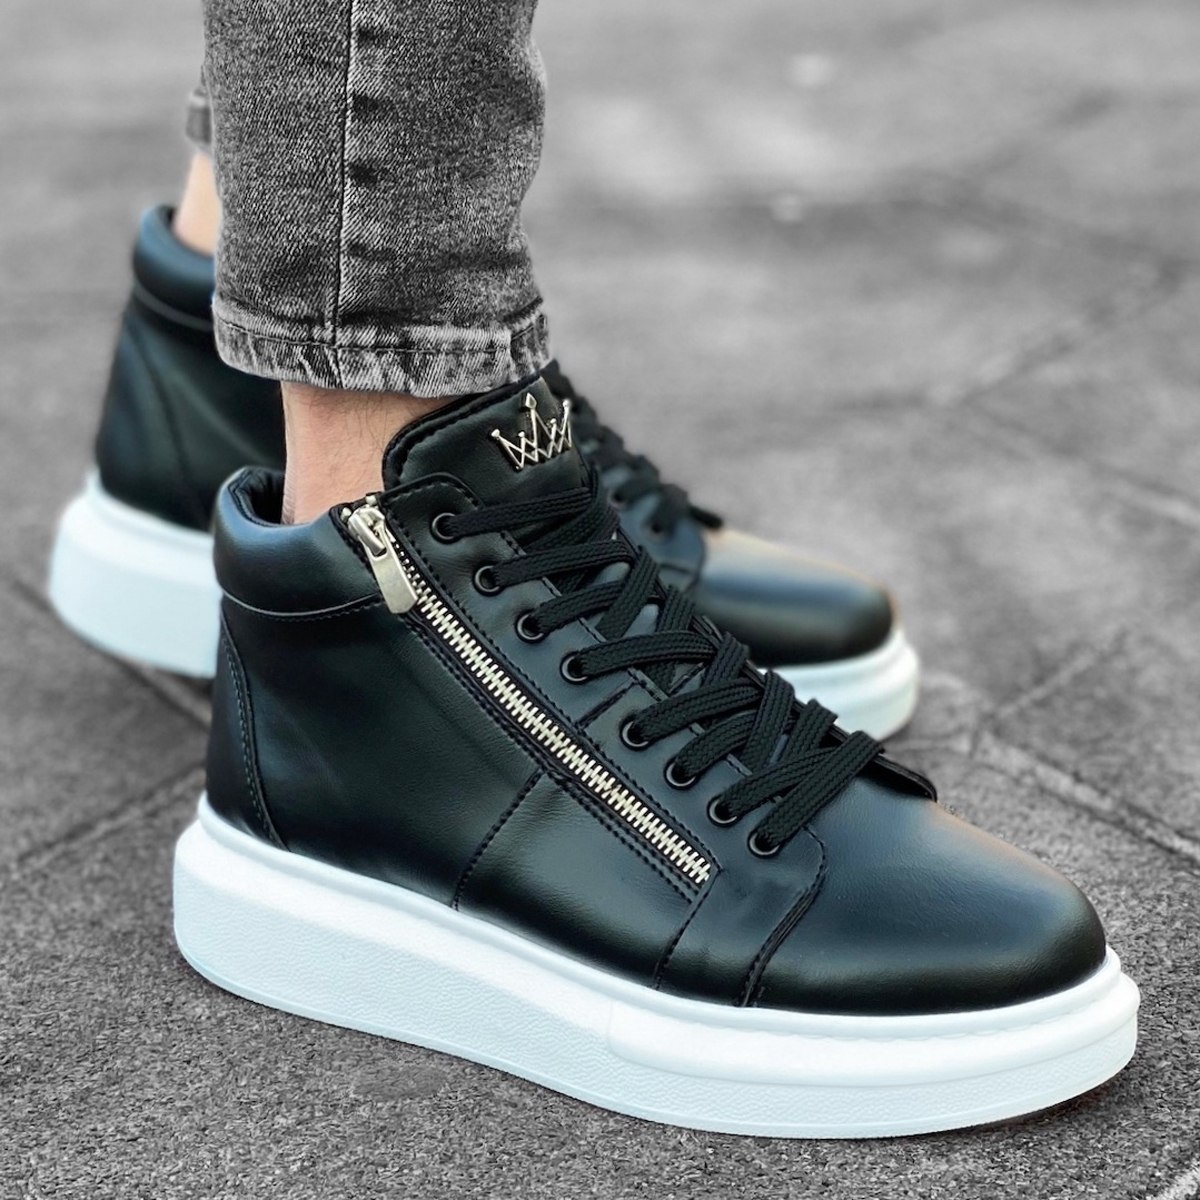 Herren High Top Sneakers Designer Schuhe mit Reissverschluss in schwarz-weiss - 1